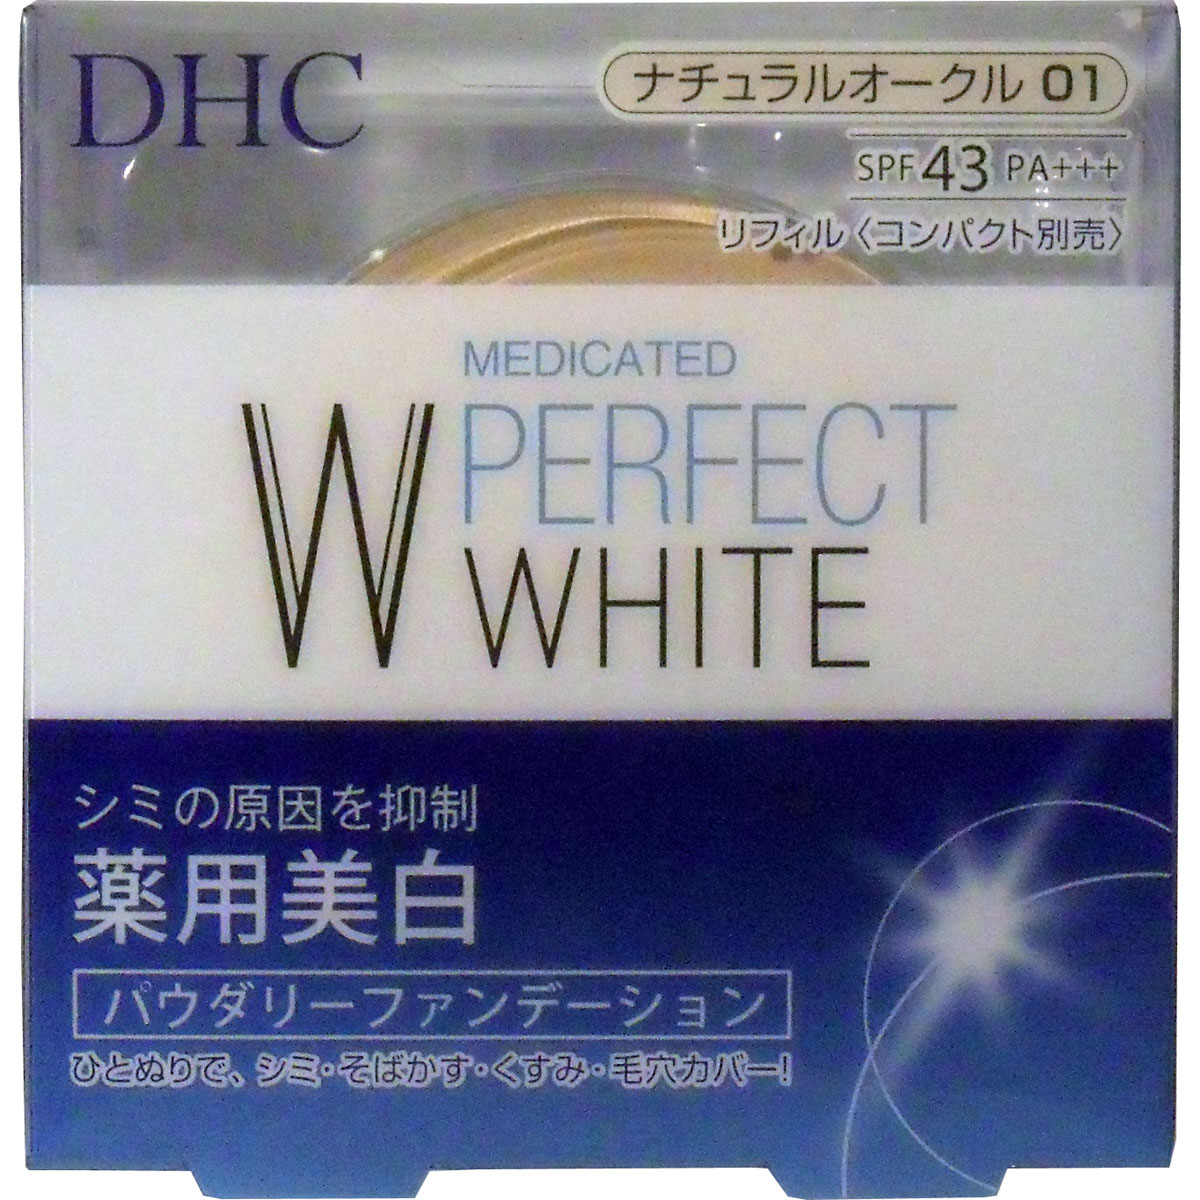 DHC 薬用美白パーフェクトホワイト パウダリーファンデーション ナチュラルオークル01 10g